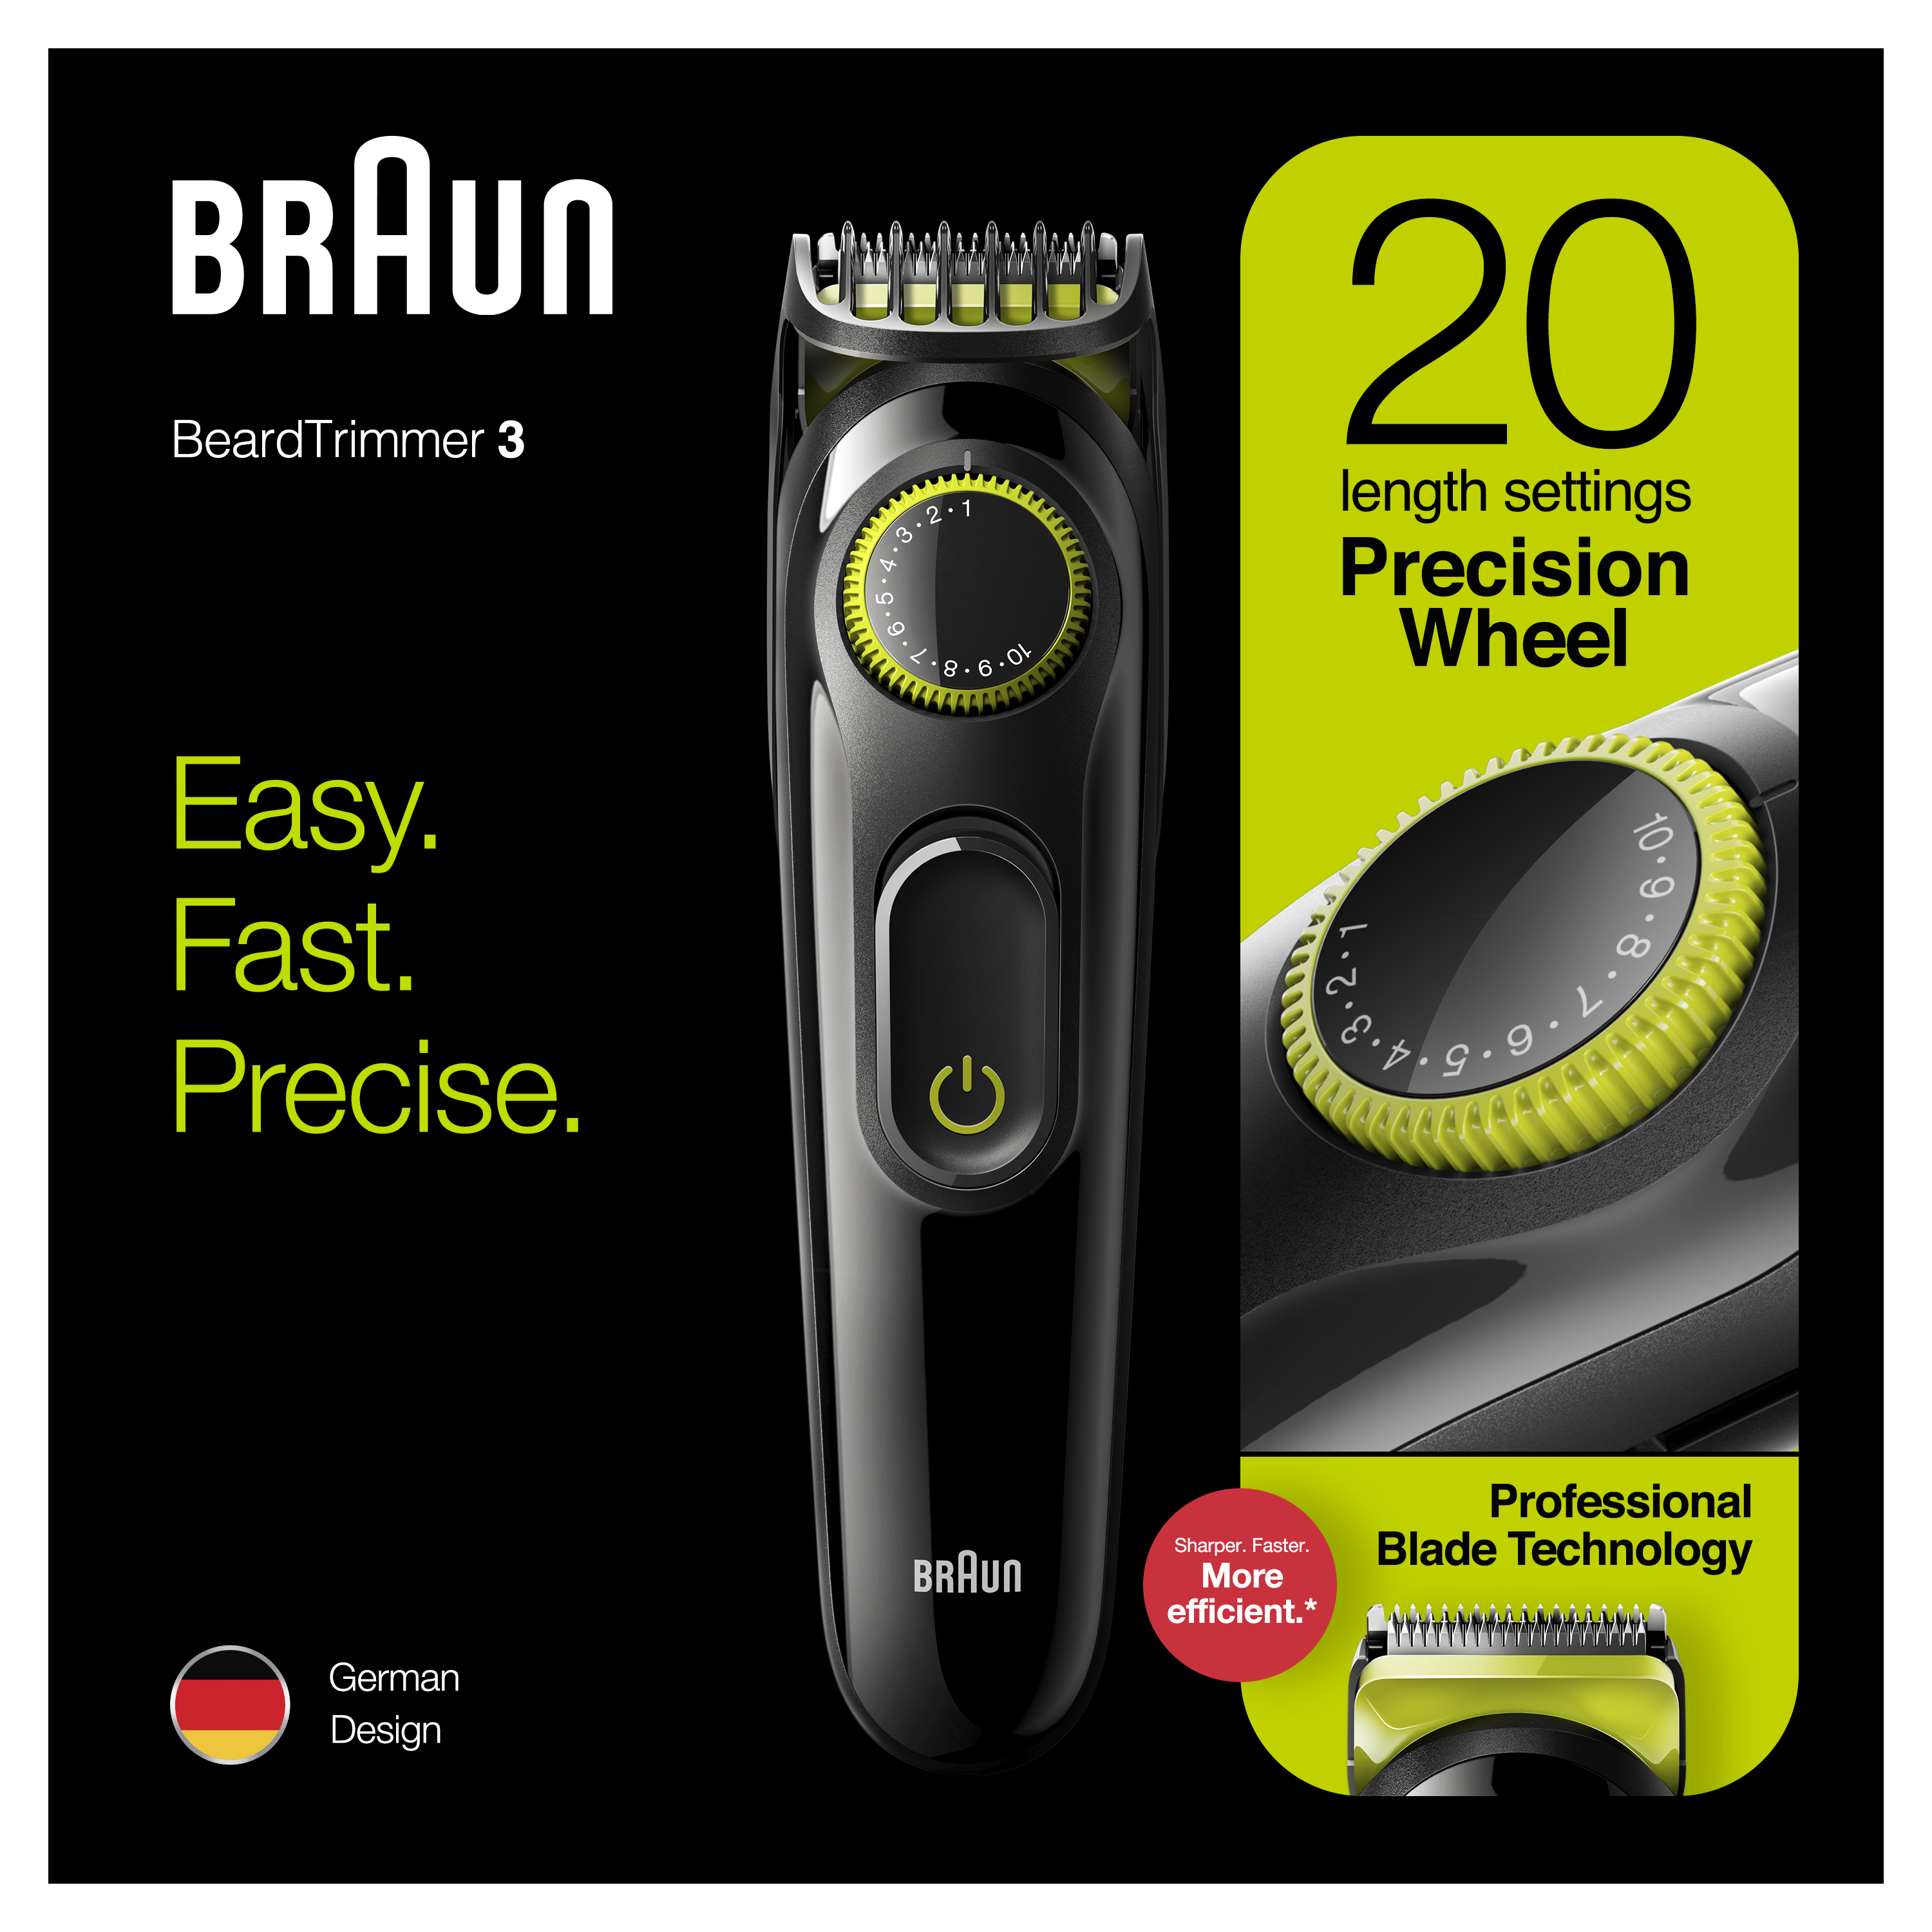 braun bt3221 review